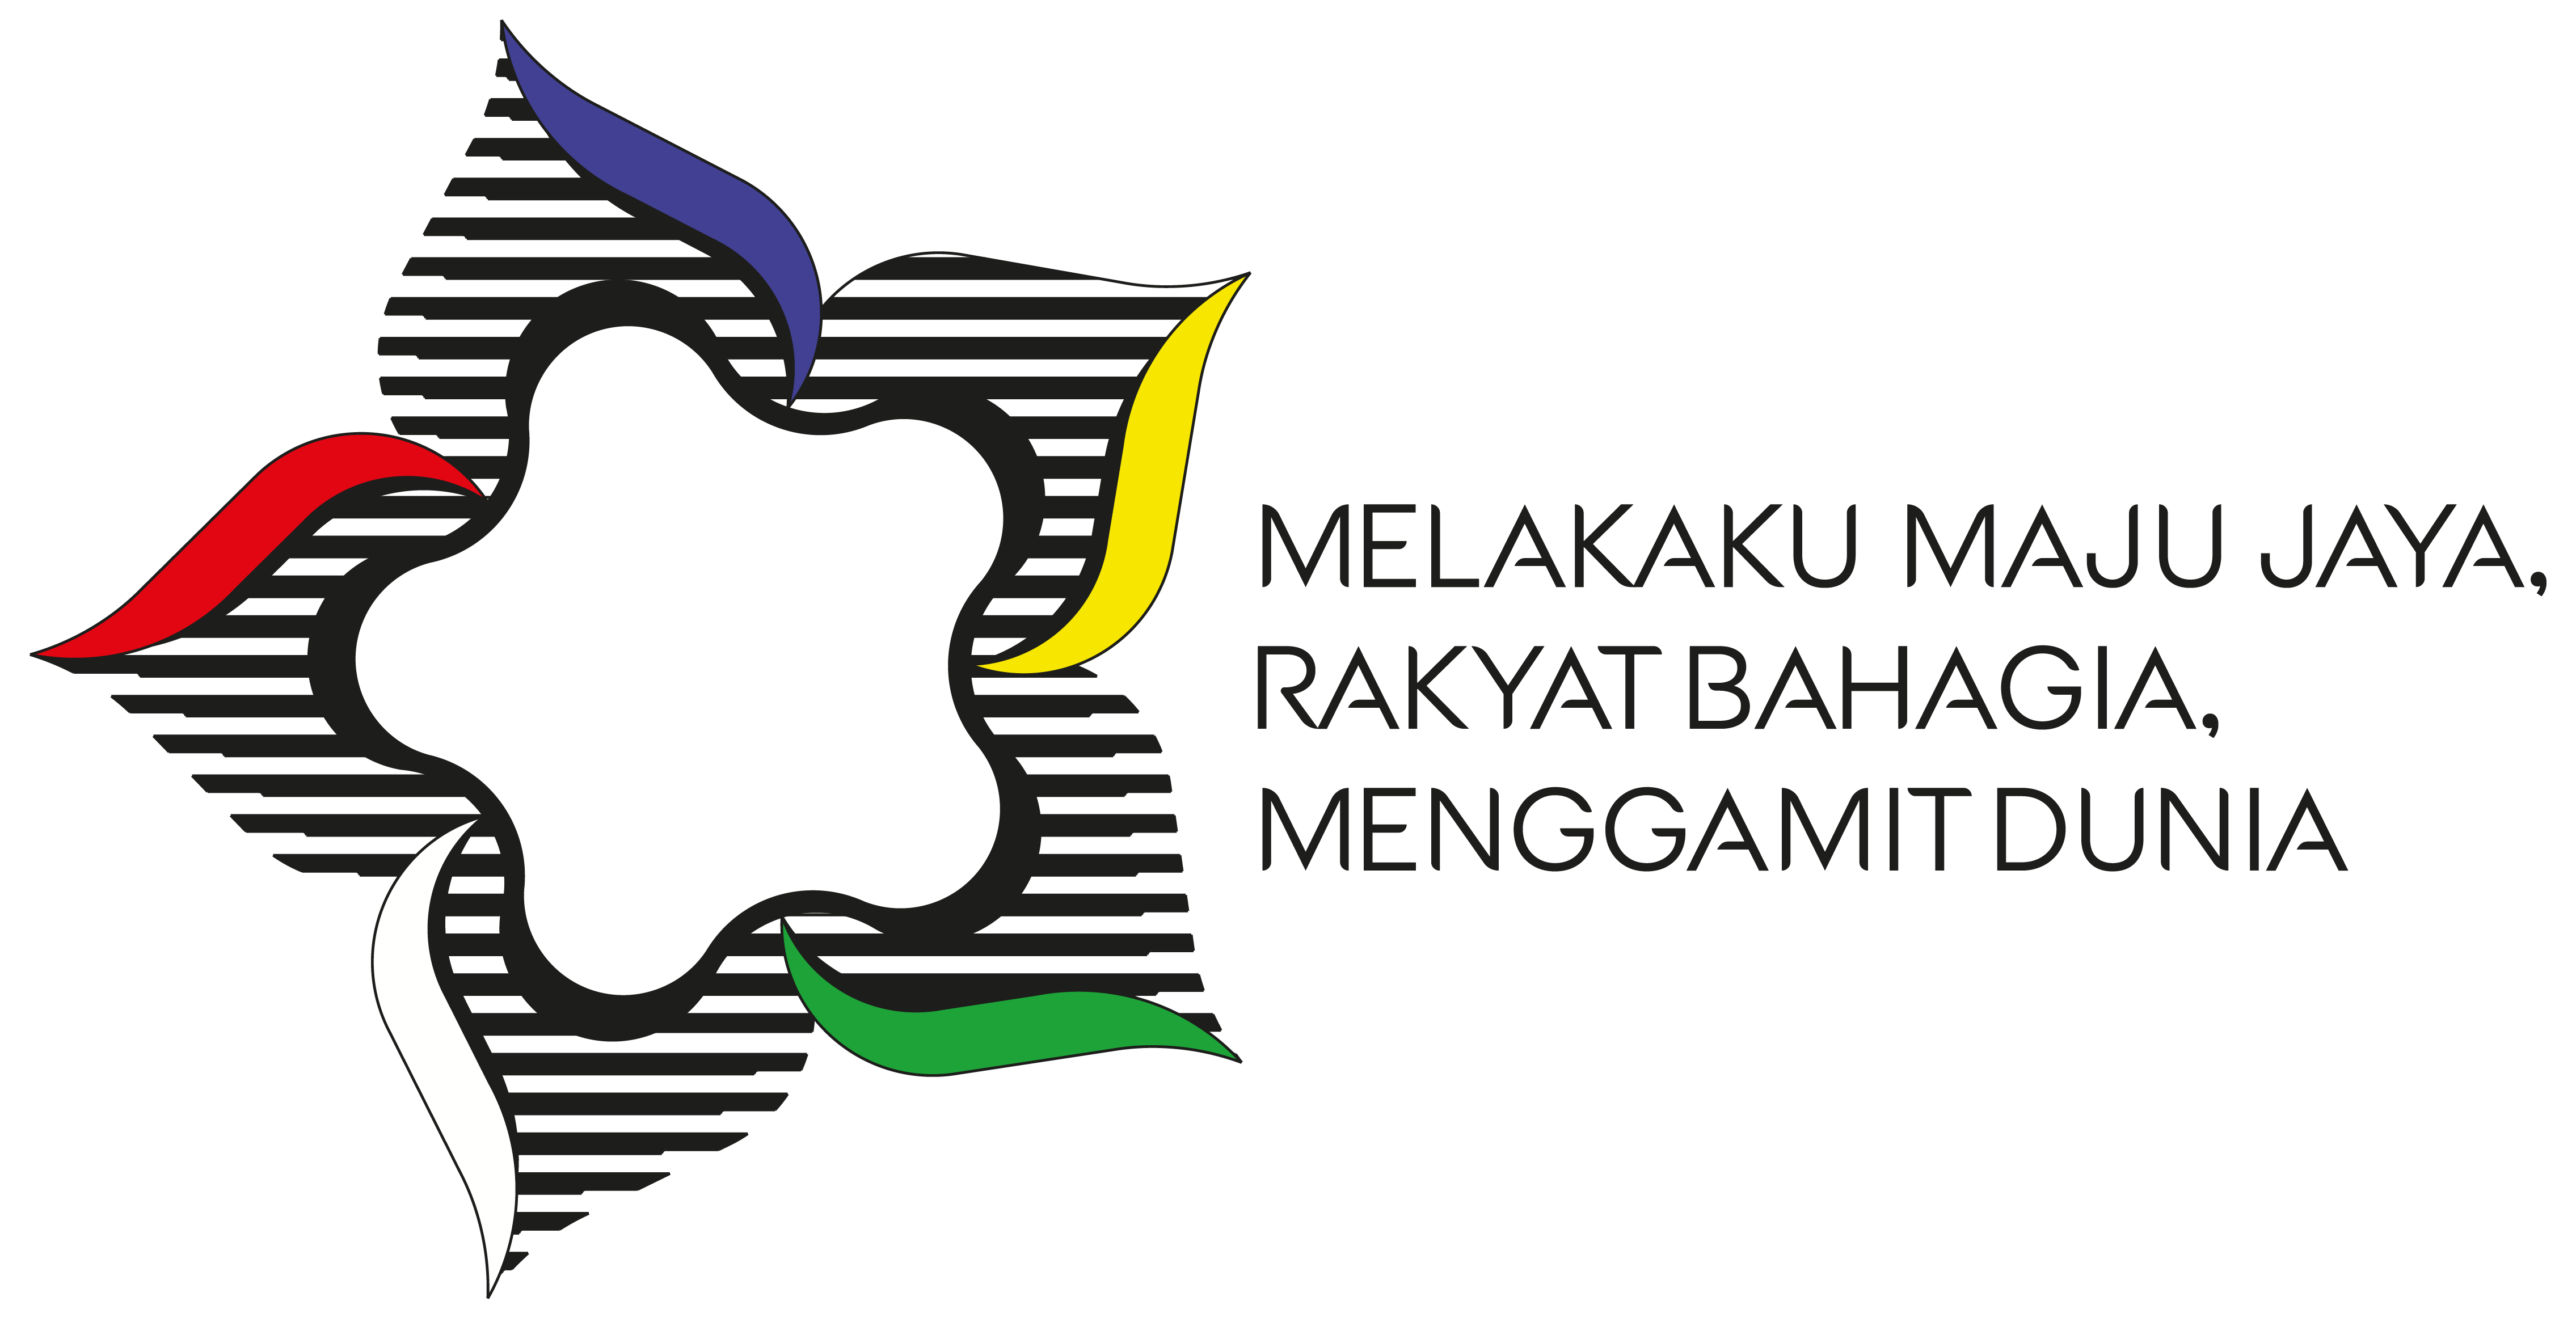 Melakaku Maju Jaya, Rakyat Bahagia Menggamit Dunia